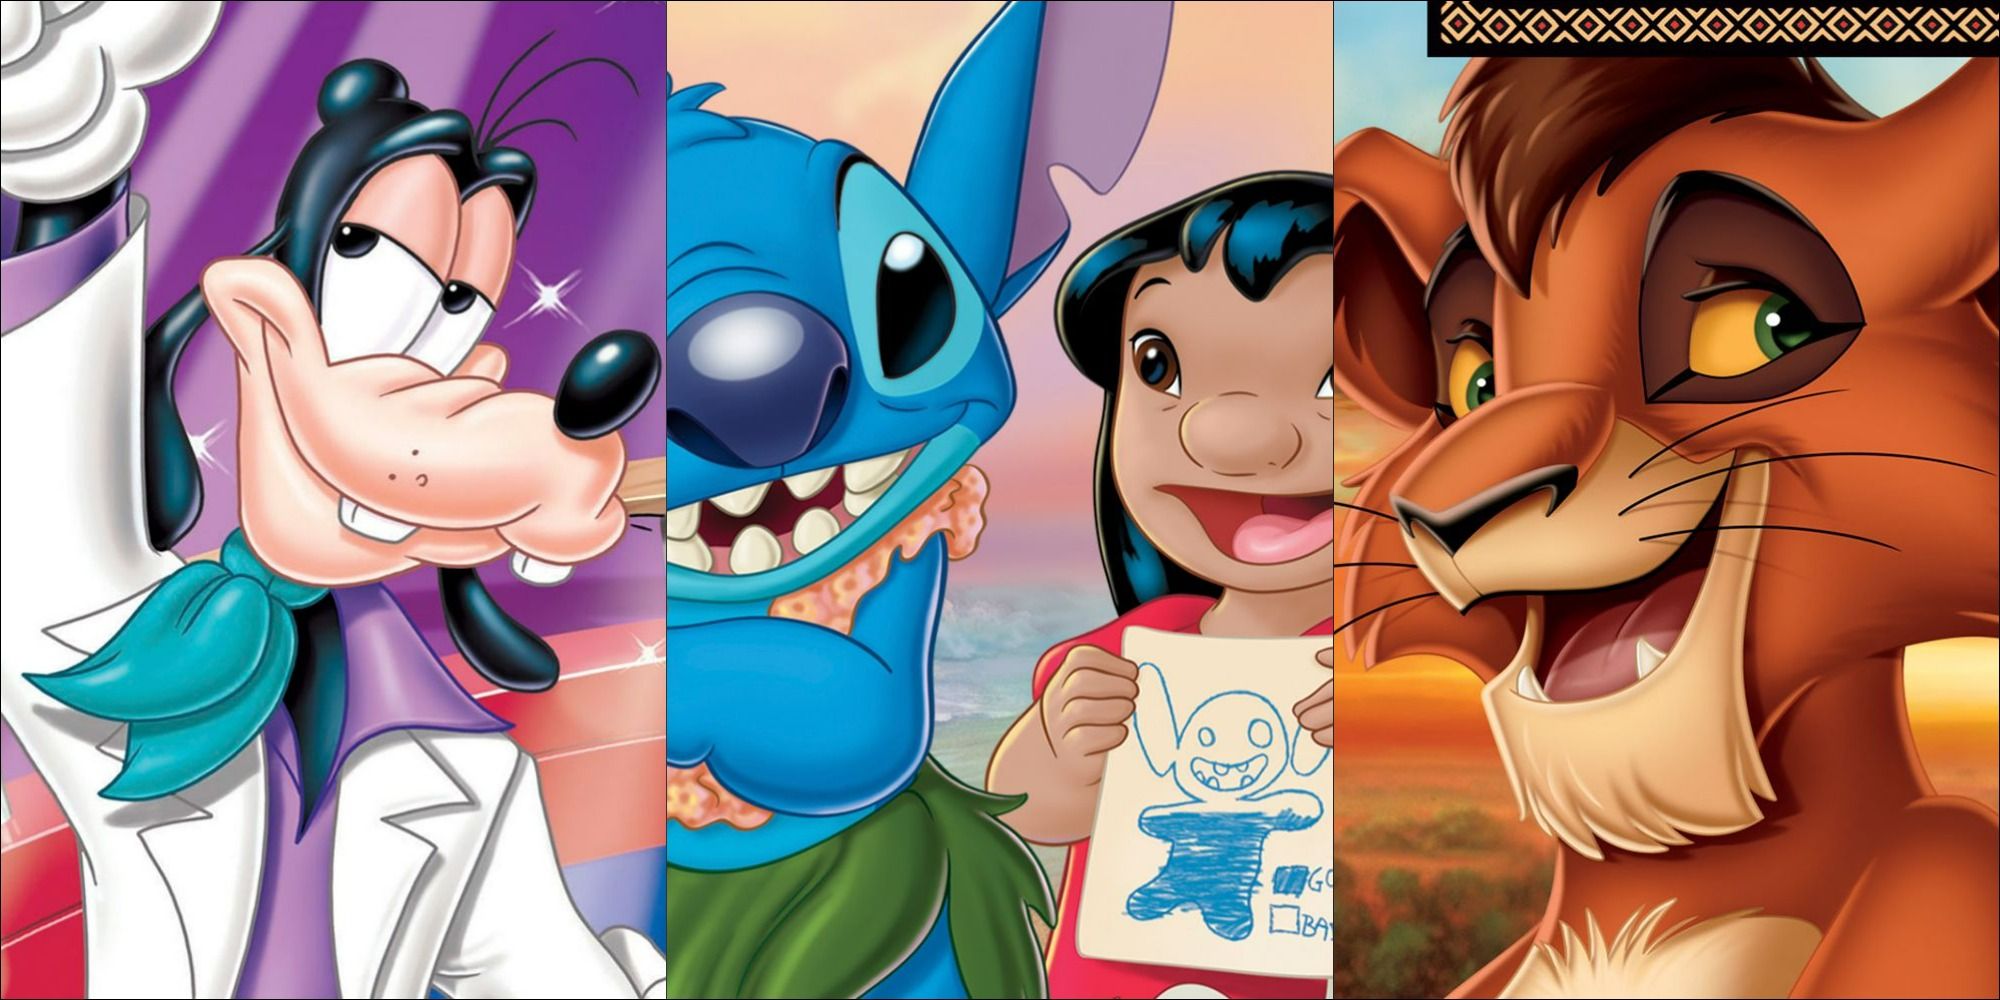 Персонажи из трех сиквелов Disney, транслируемых прямо на видео.